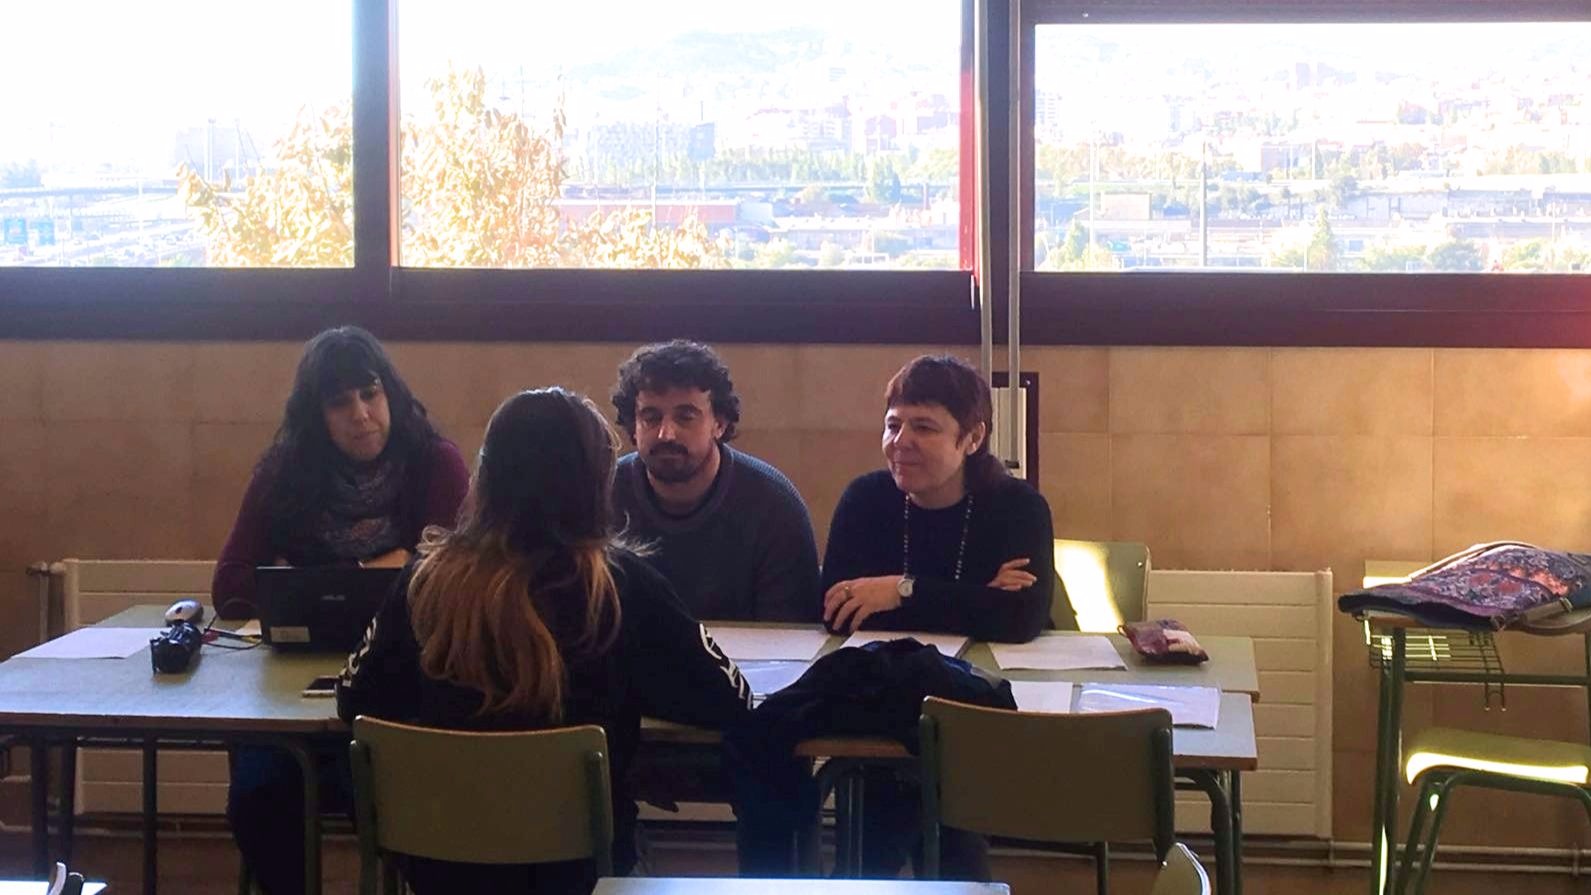 Más de 100 alumnos y alumnas de FP se presentan a las entrevistas del Erasmus+ VET prácticas en Santa Coloma de Gramenet